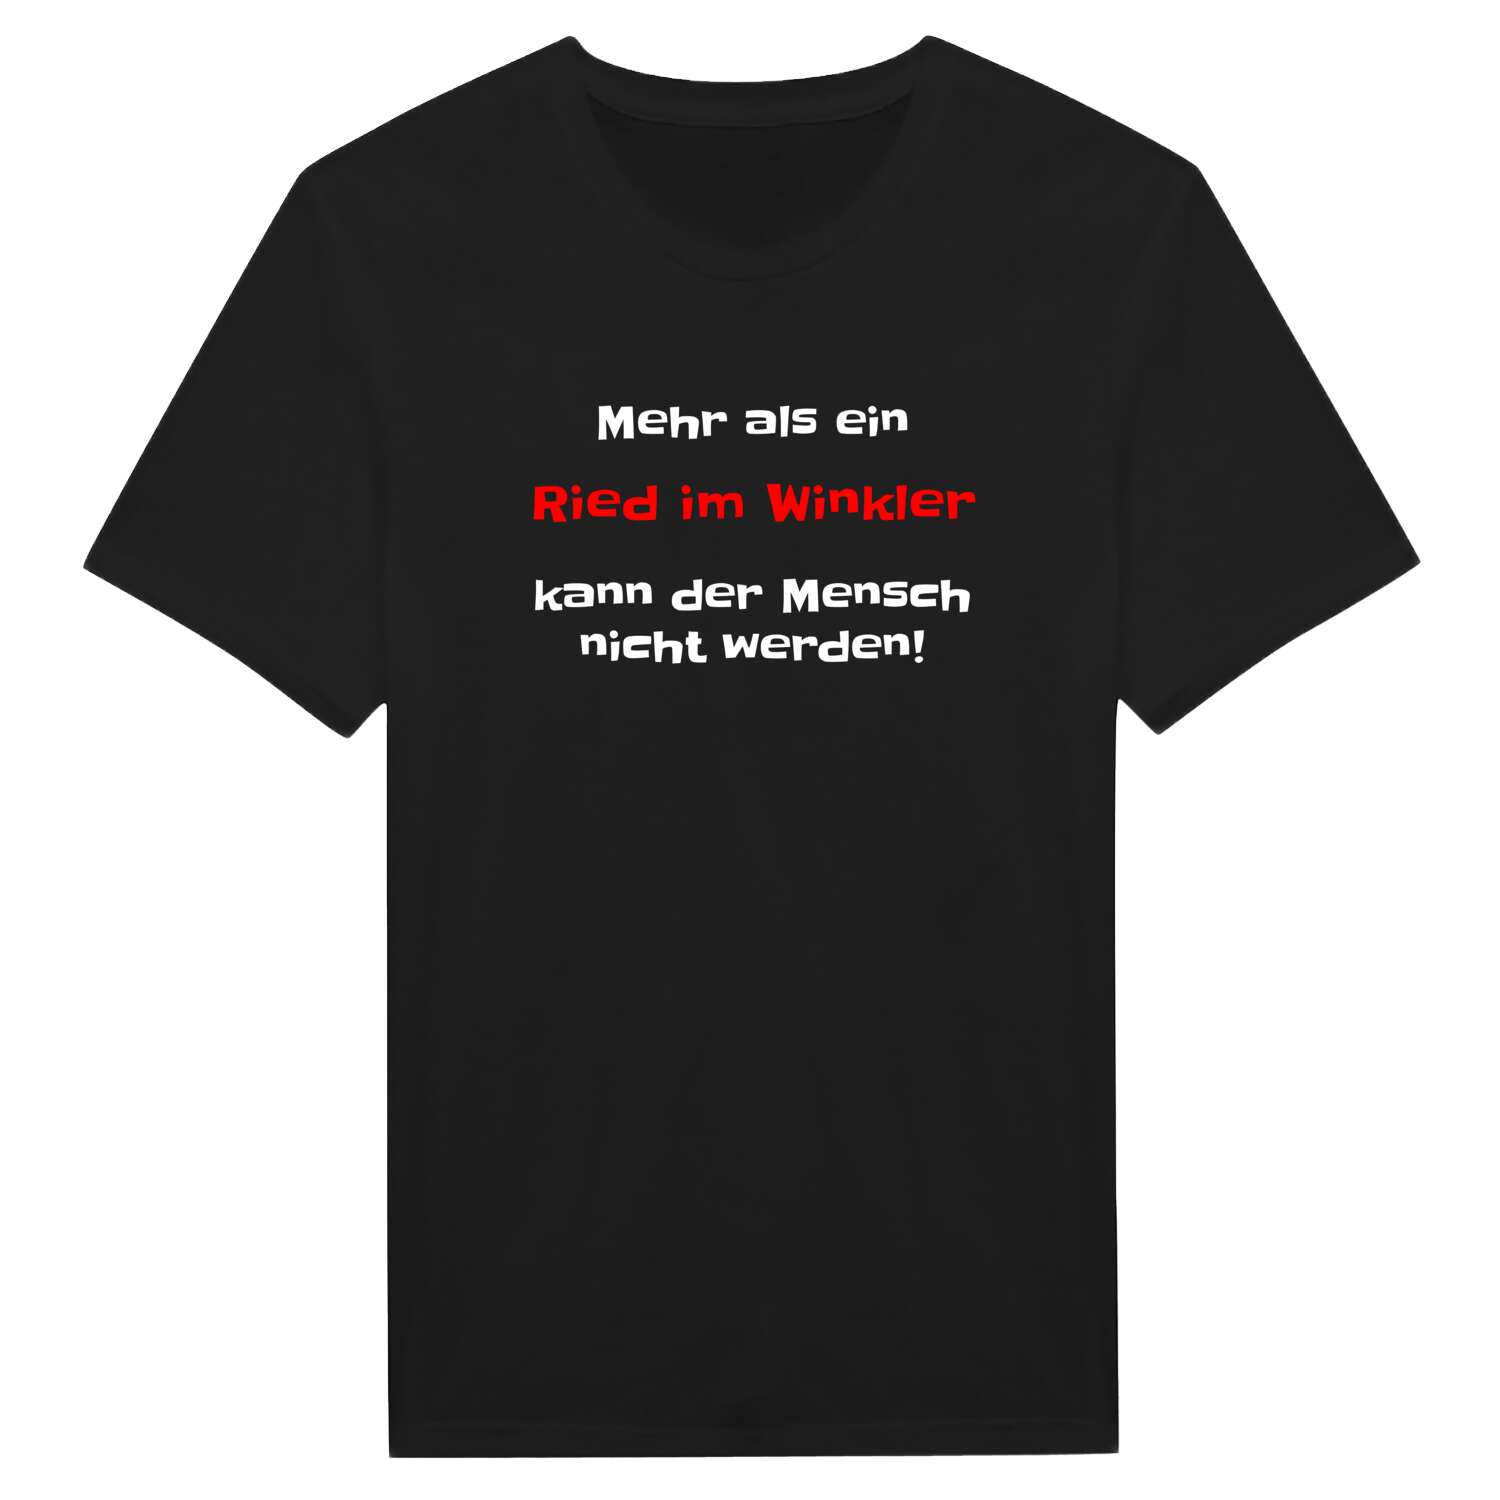 Ried im Winkl T-Shirt »Mehr als ein«